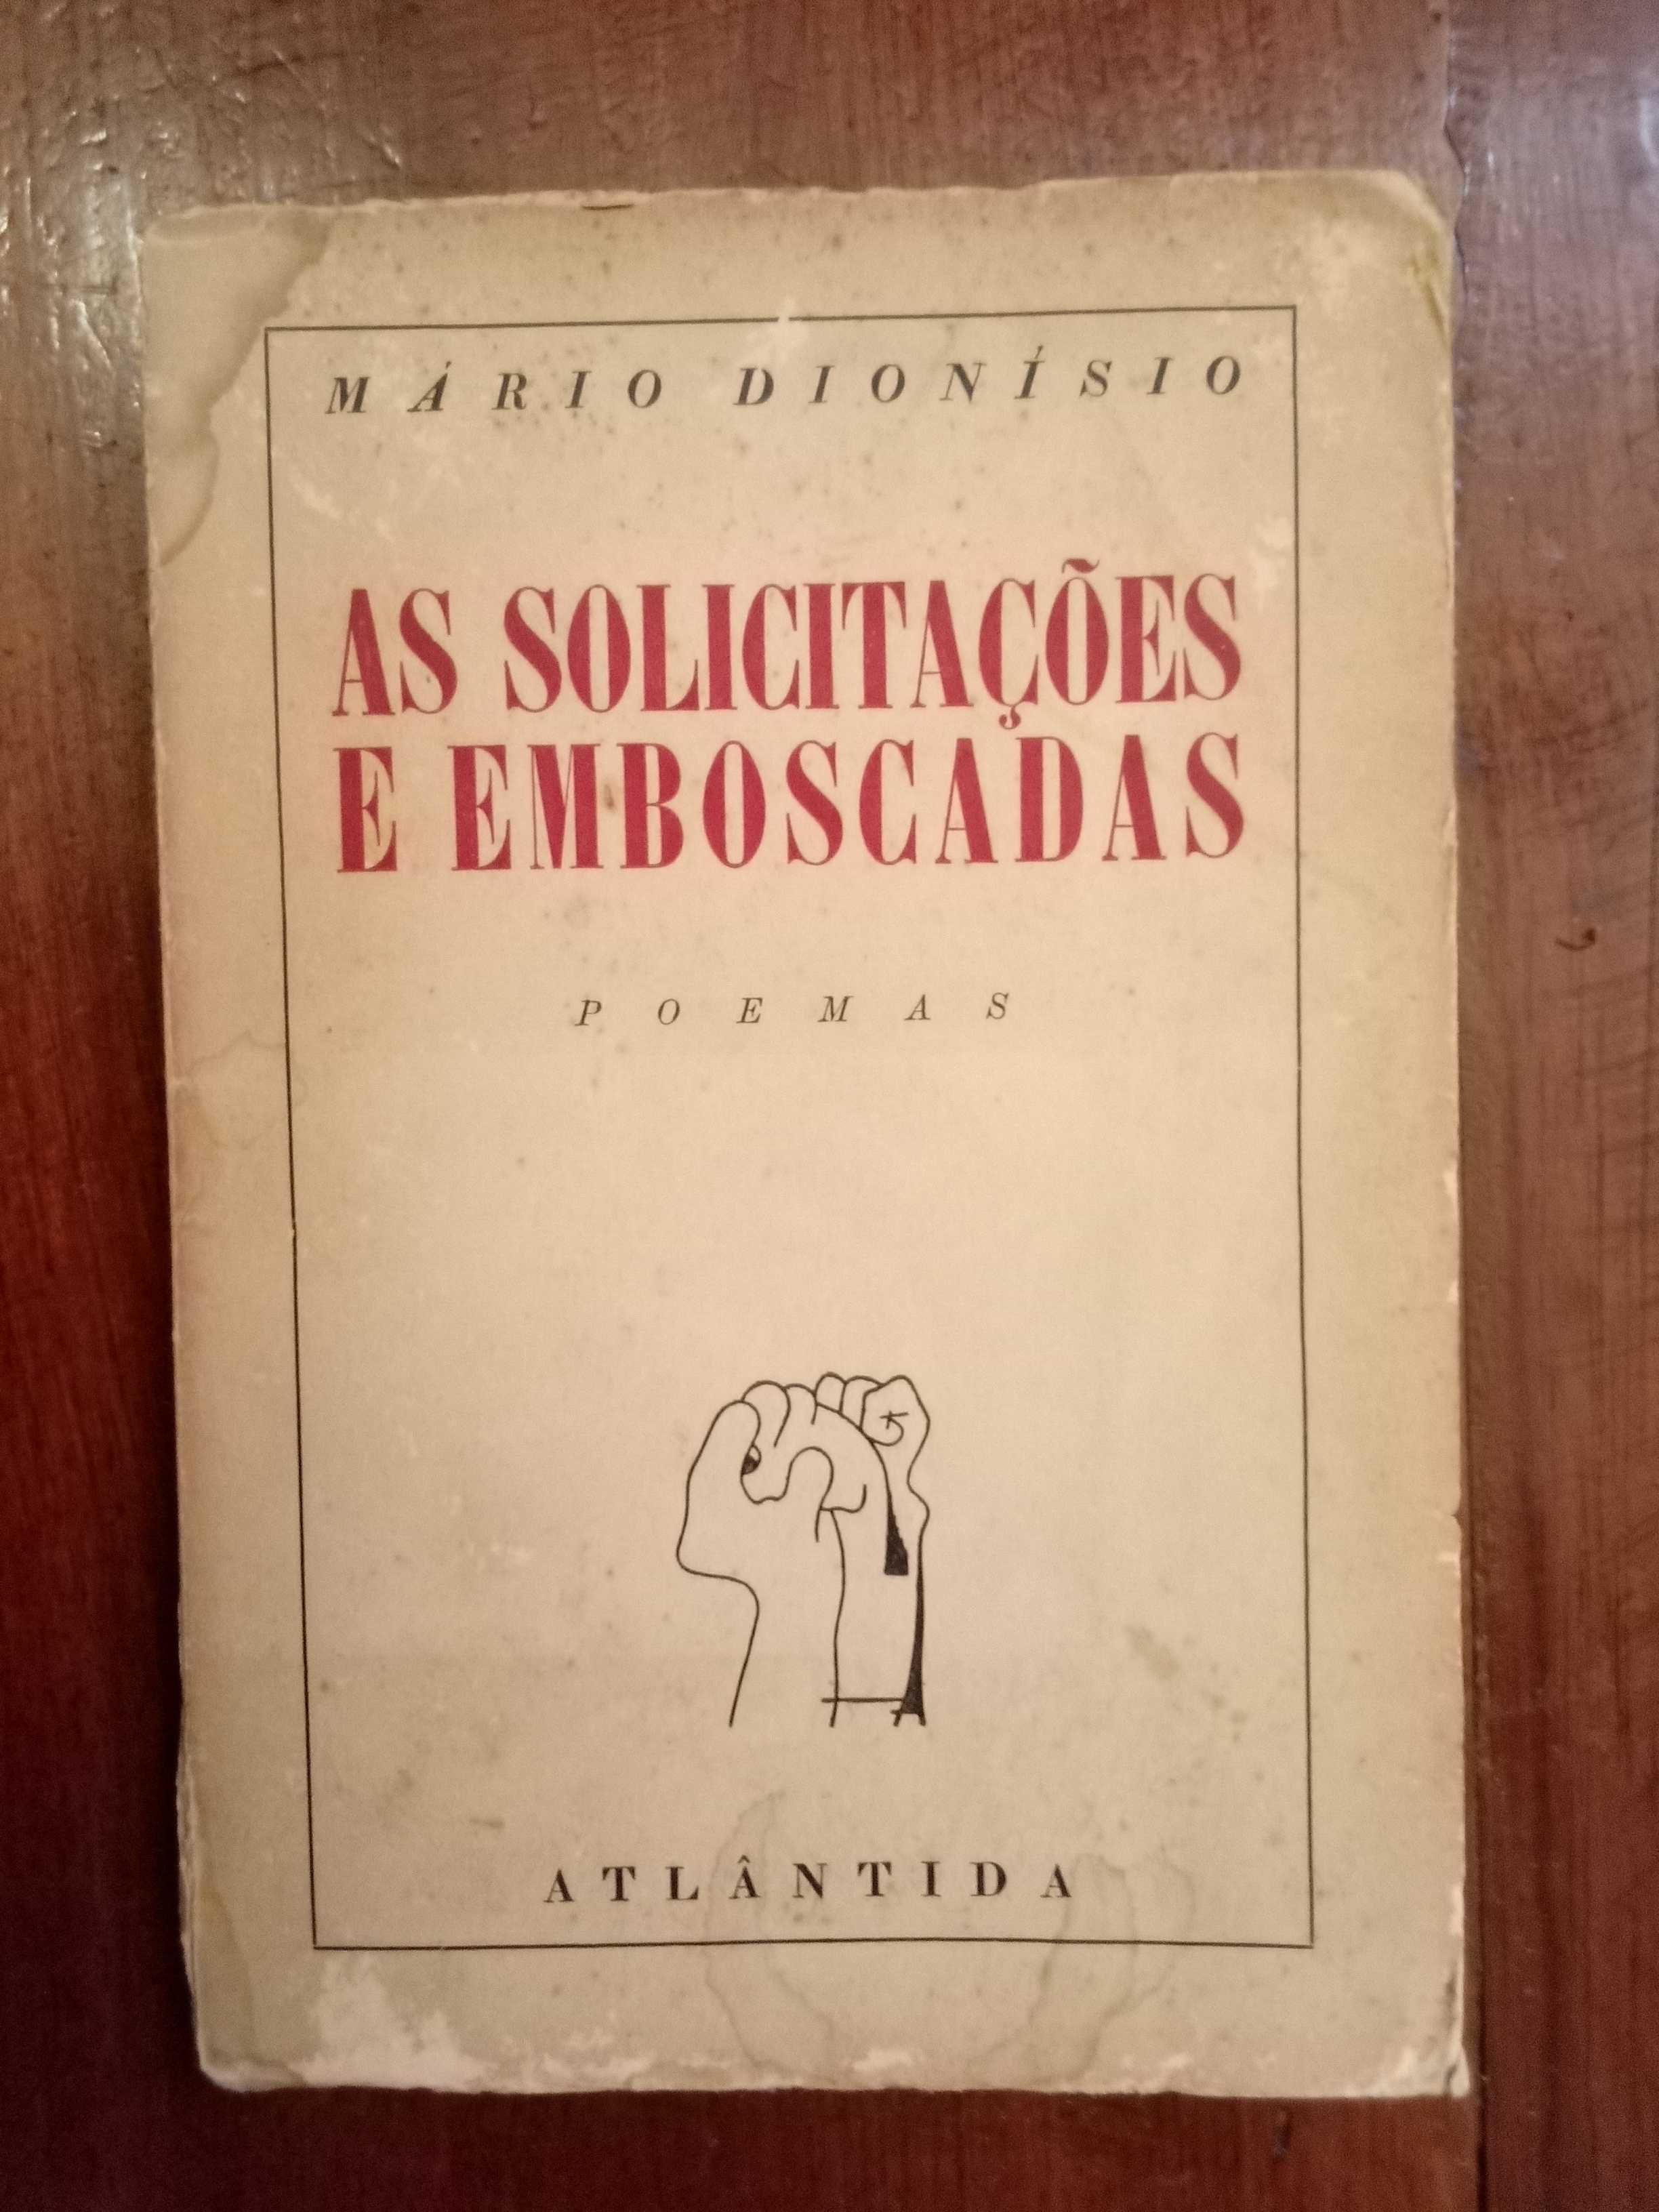 Mário Dionísio - As solicitações e emboscadas [1.ª ed., autografado]